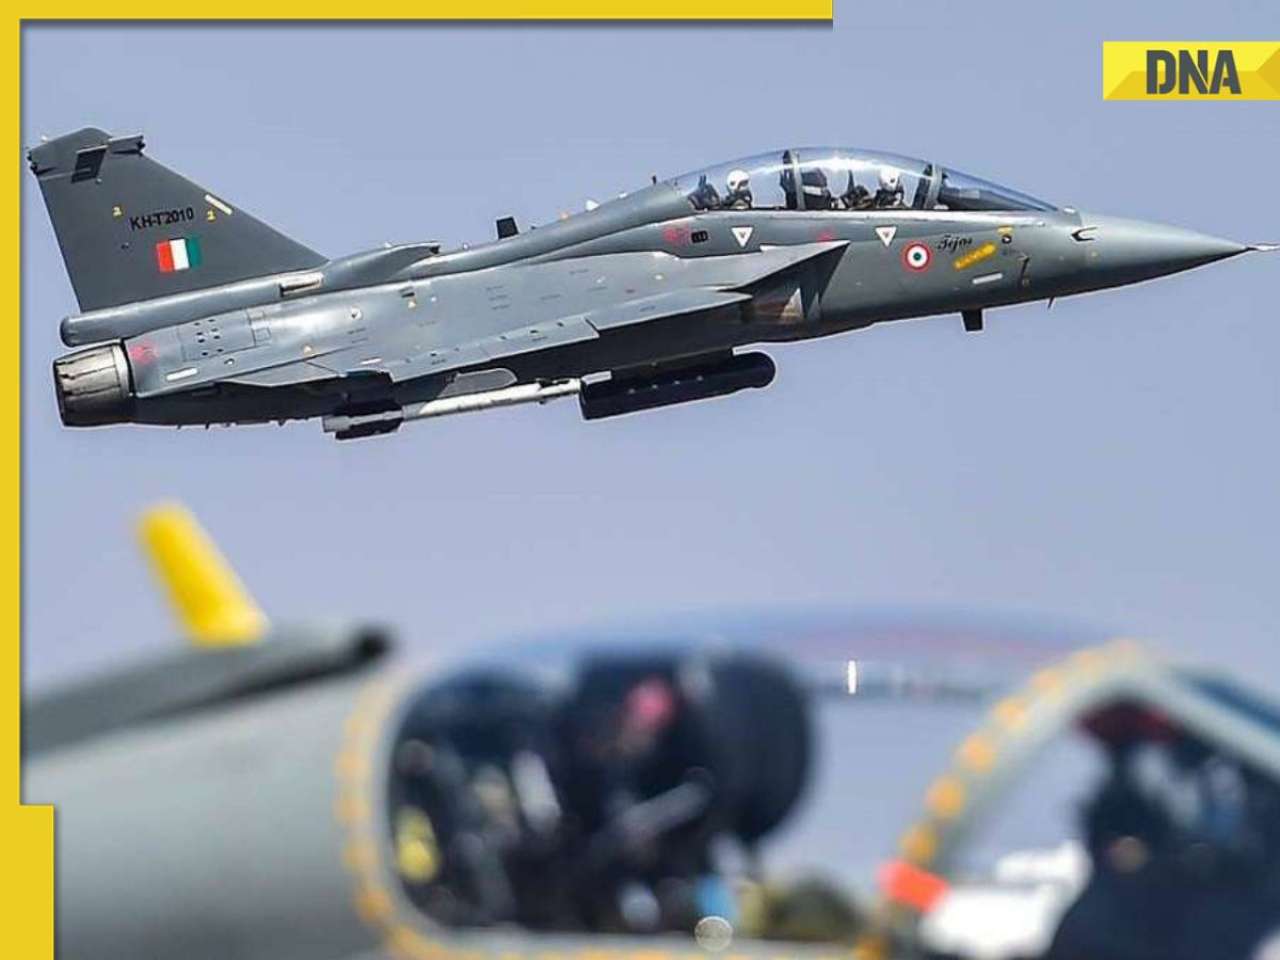 IAF's Tejas aircraft crashes near Jaisalmer, pilot safe 